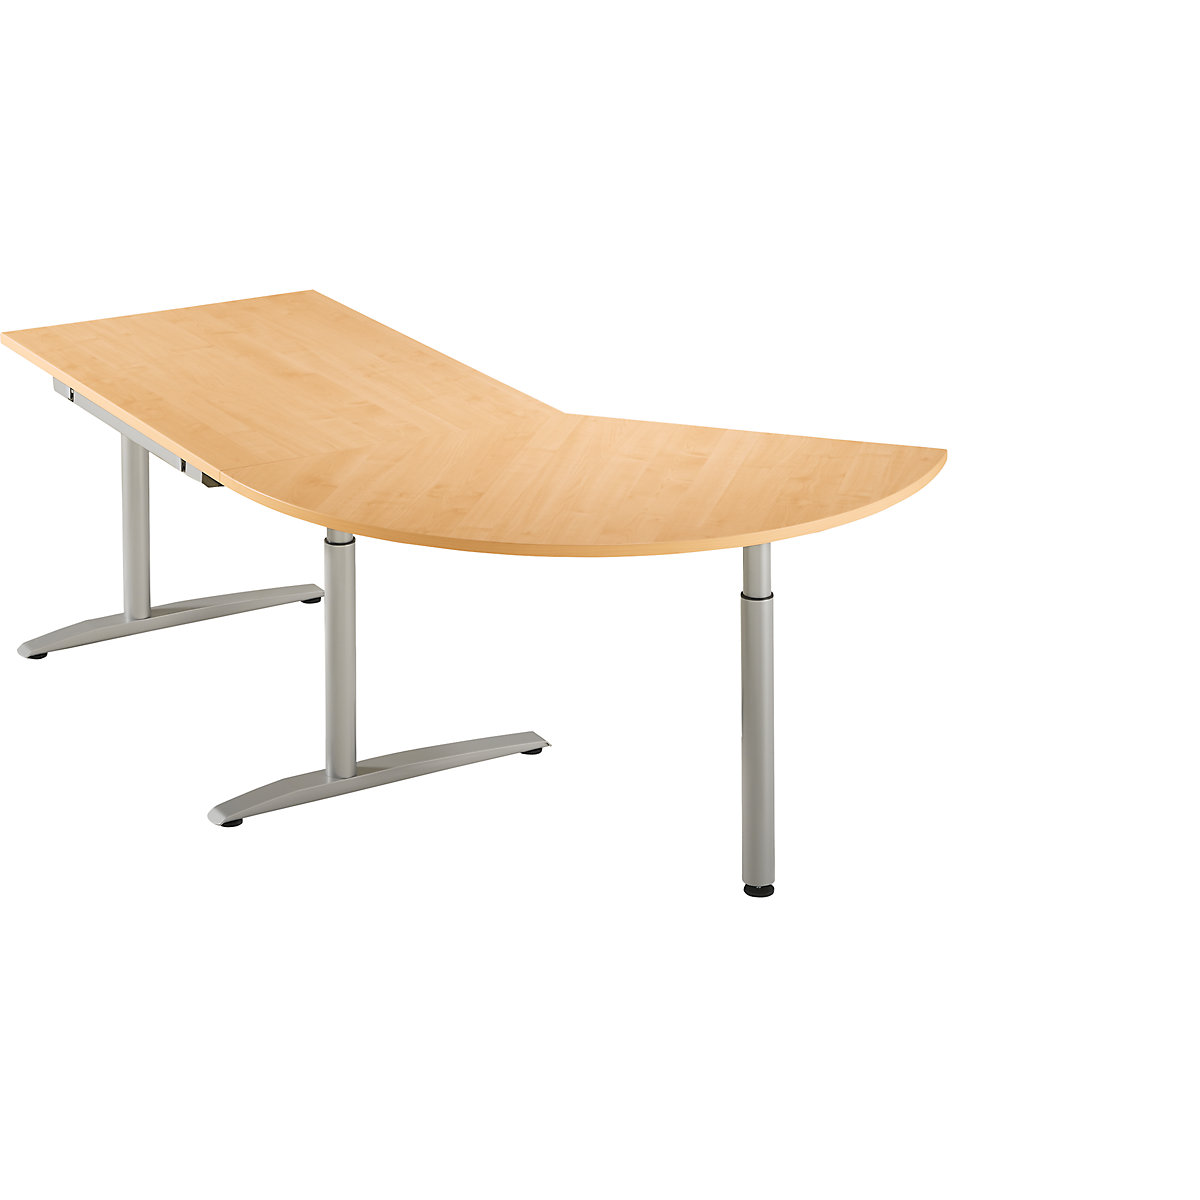 Table d'extension réglable en hauteur de 650 à 850 mm HANNA, 3/8 de cercle, avec pied stabilisateur, façon hêtre